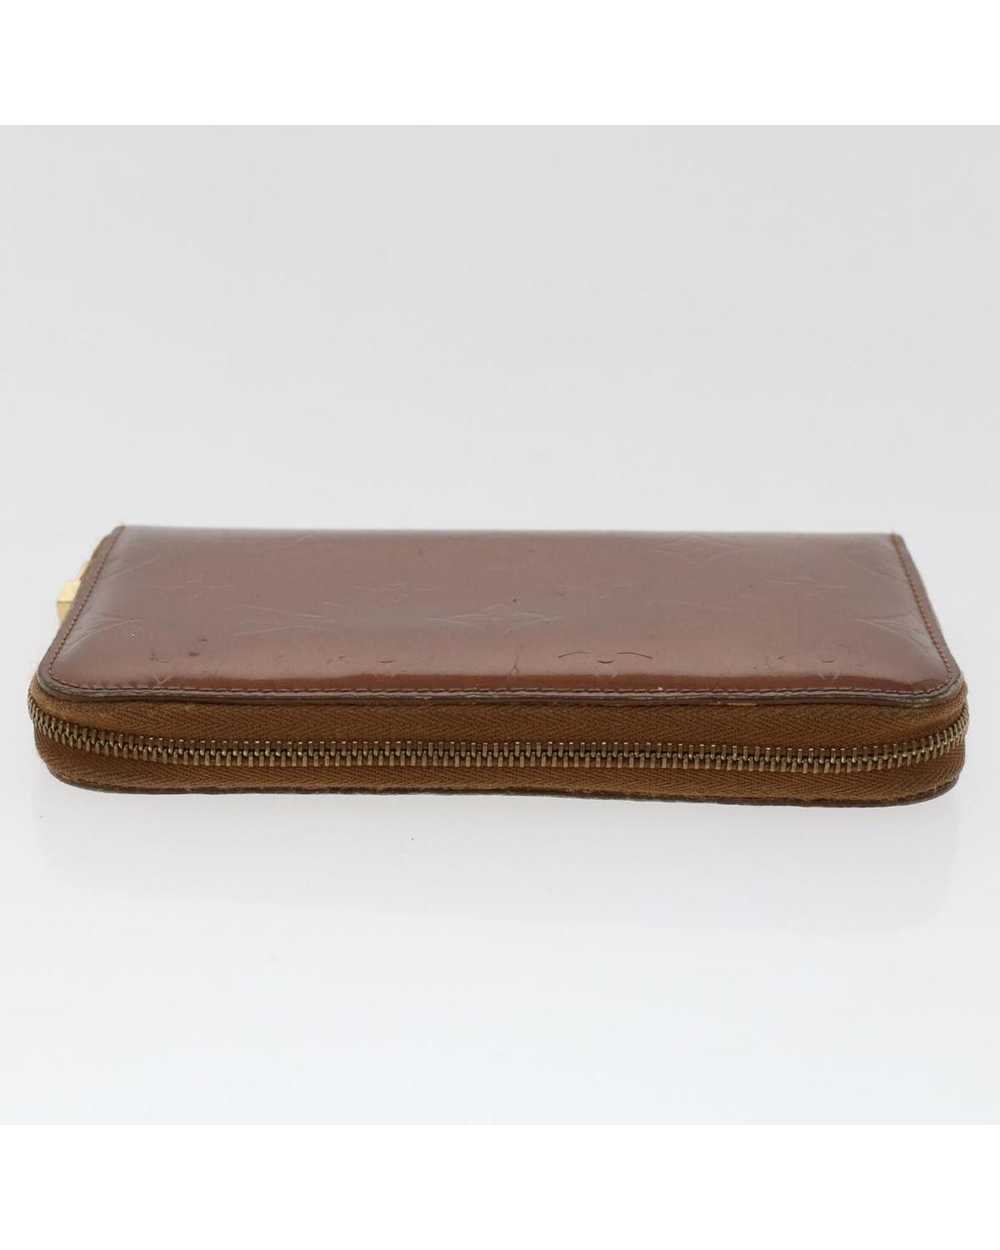 Louis Vuitton Bronze Patent Leather Long Wallet - image 3